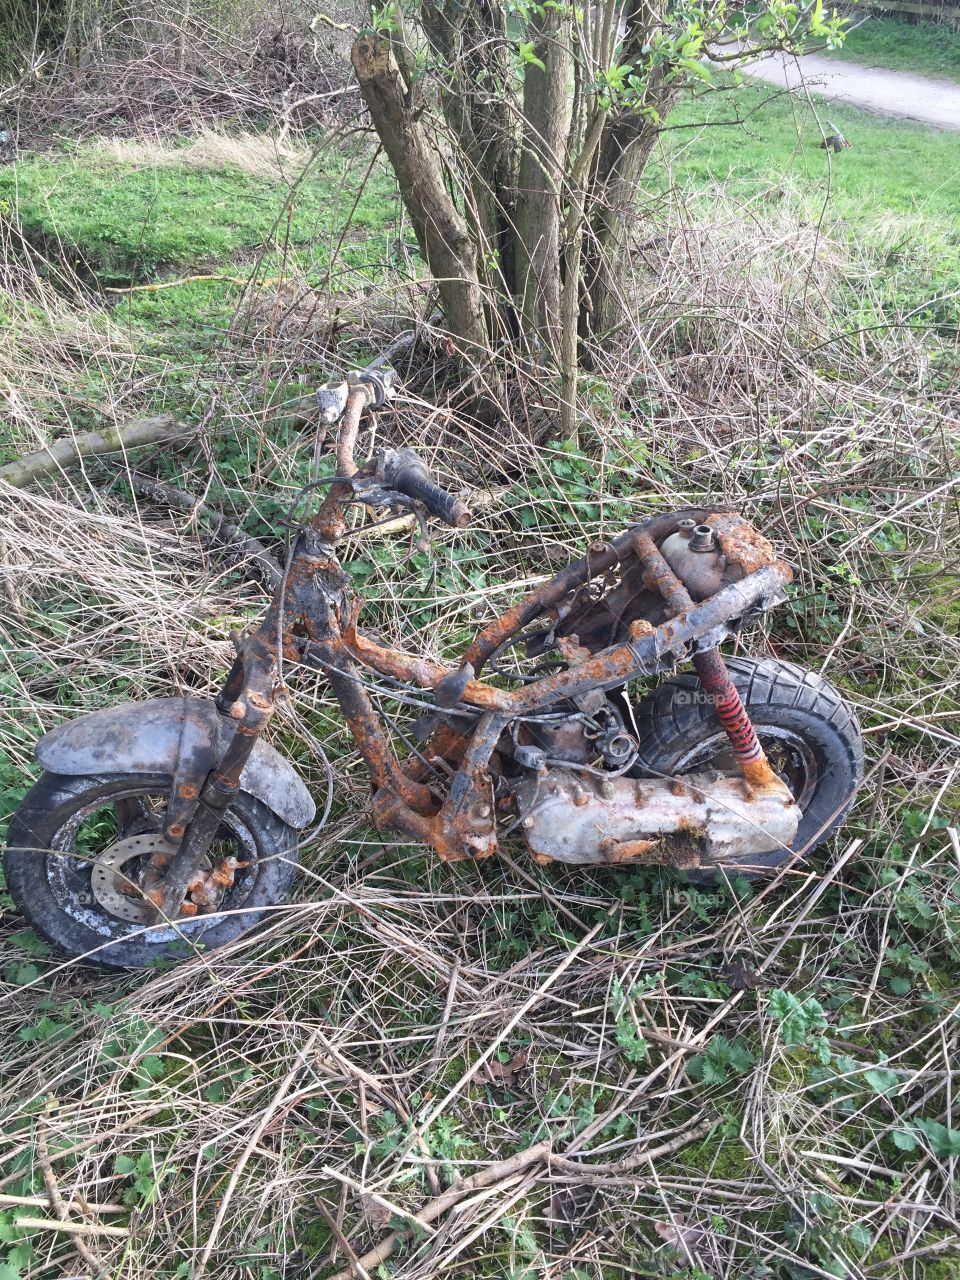 Rusty motorbike in woods